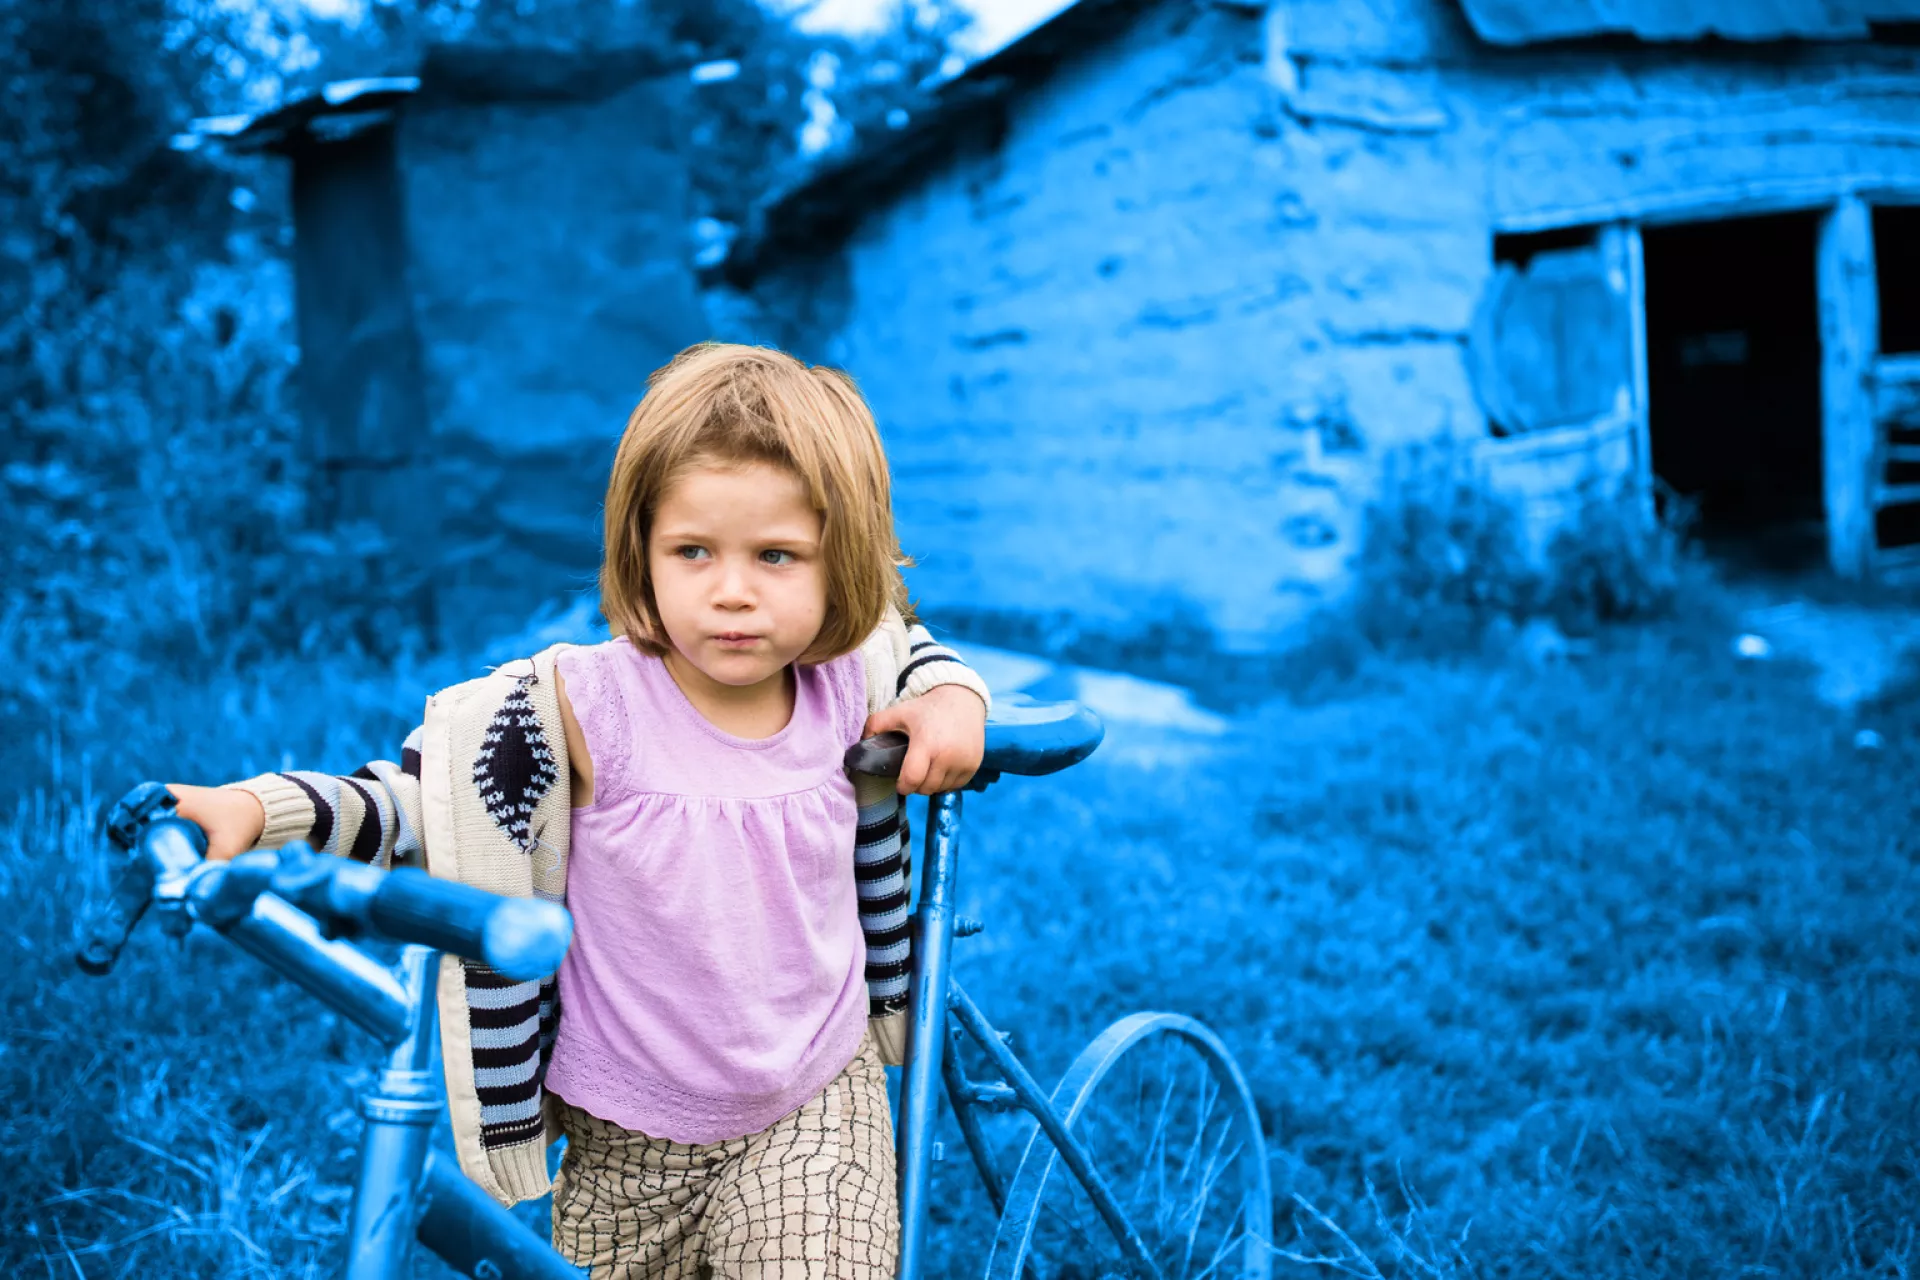 Четырехлетняя Флори Мария играет со сломанным велосипедом у своего дома в Румынии.